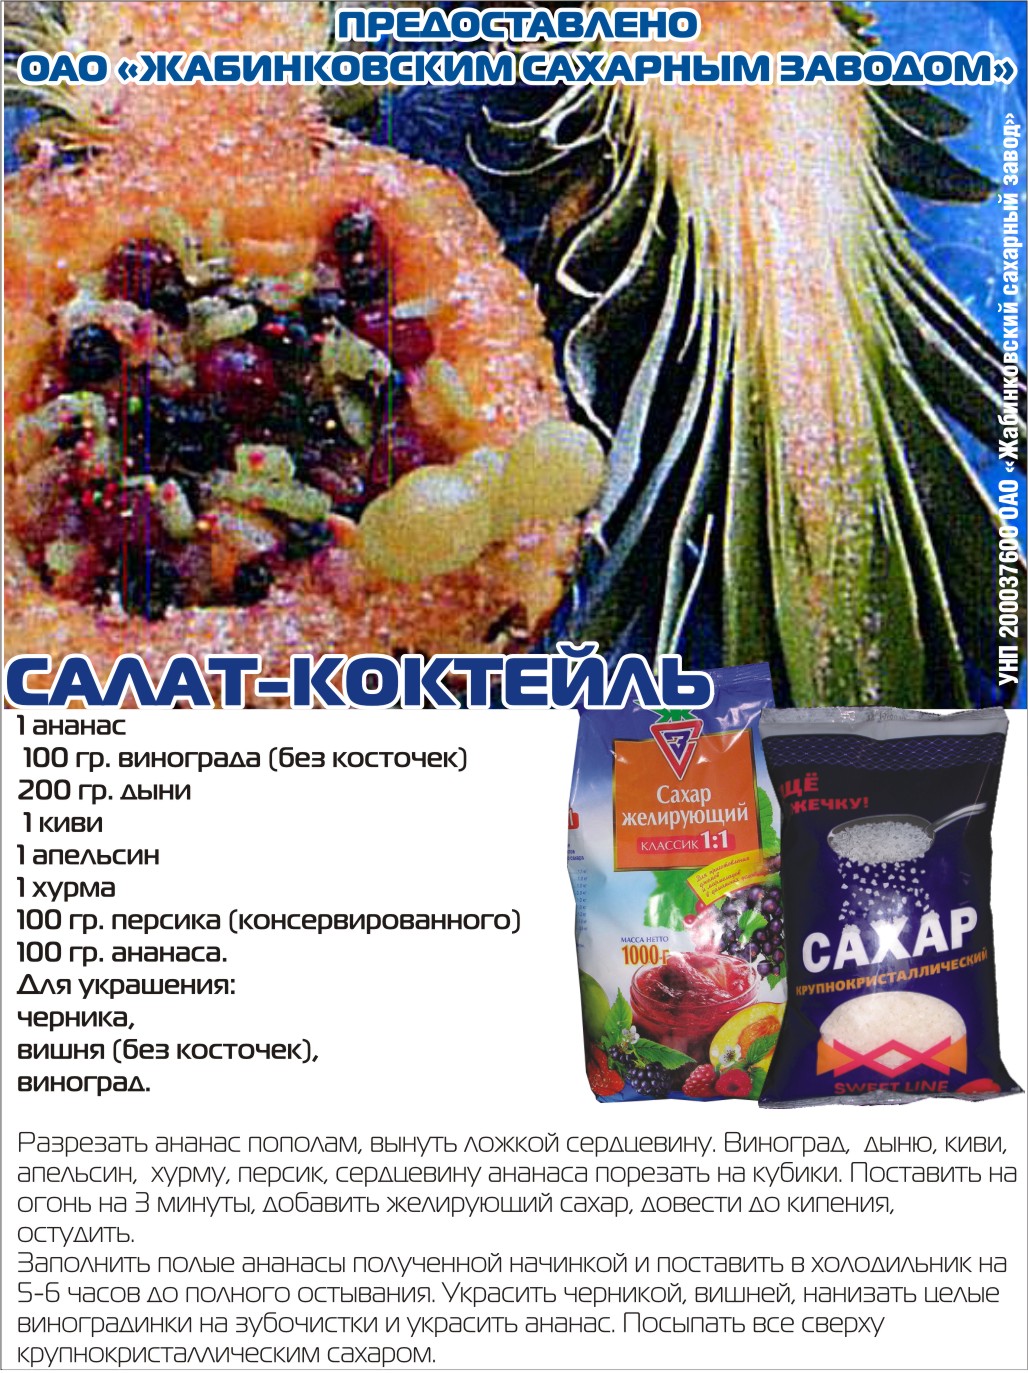 Салат-коктейль от ОАО "Жабиновский сахарный завод"